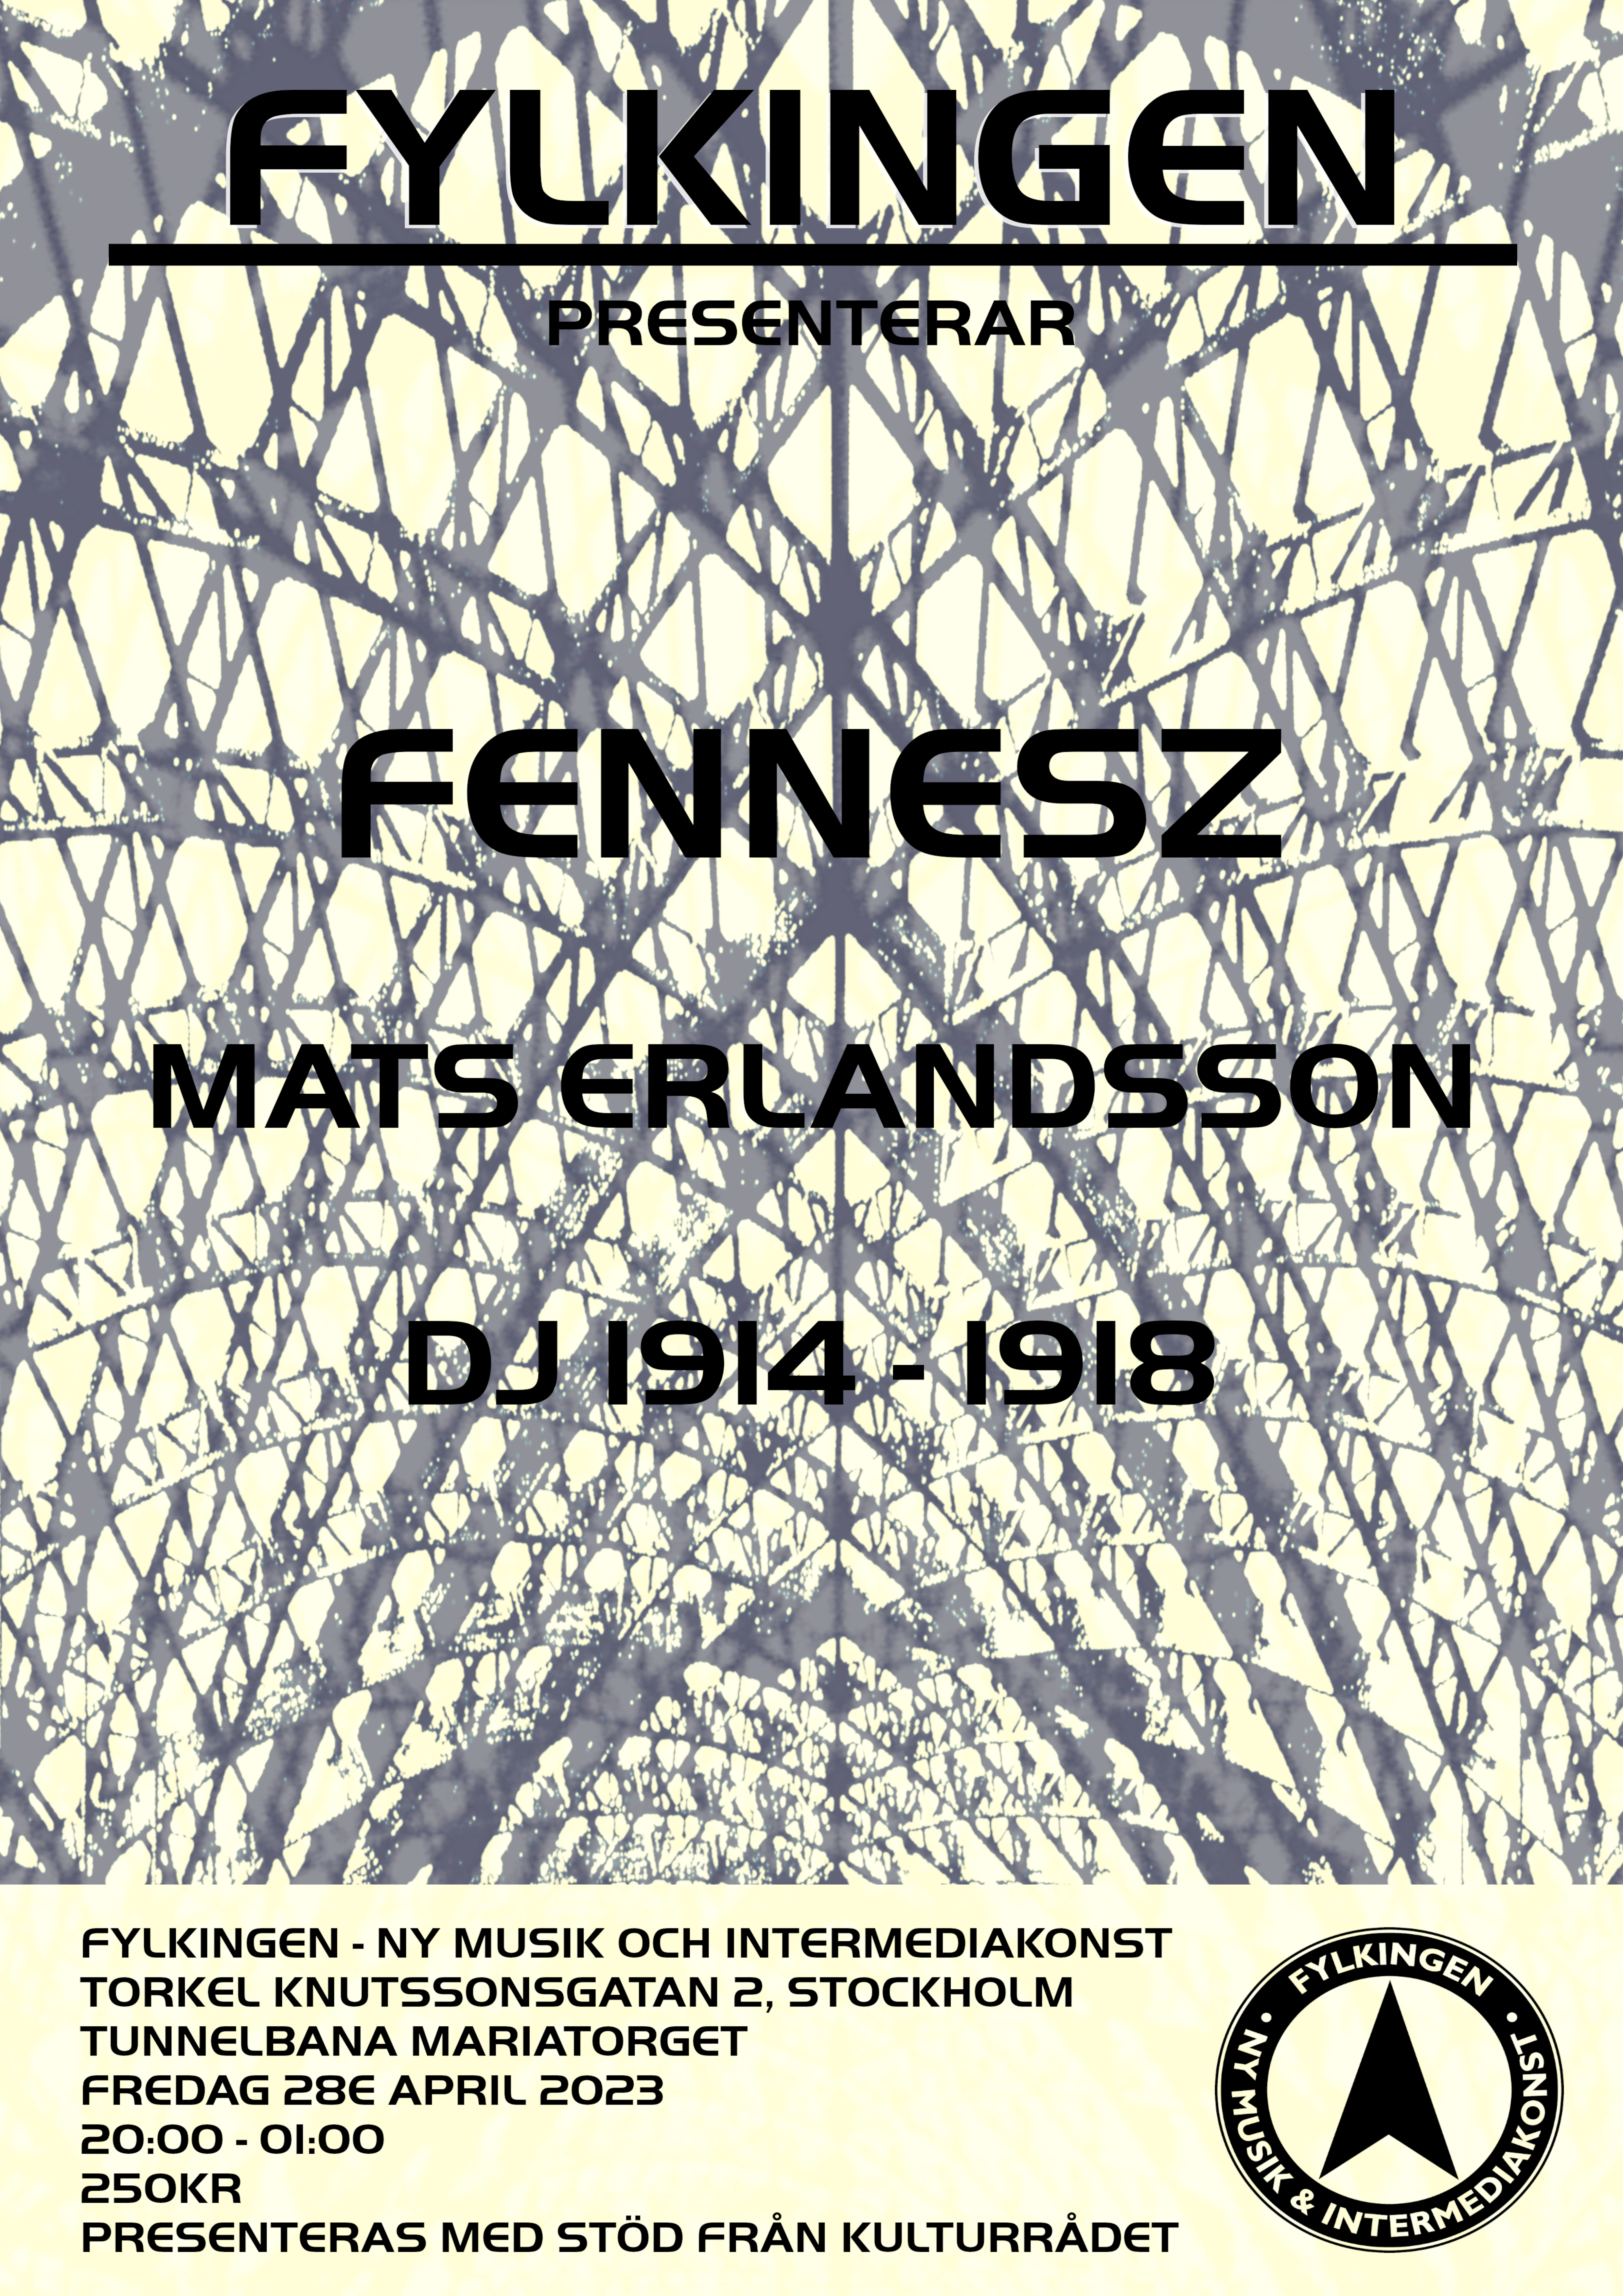 Poster for Fylkingen